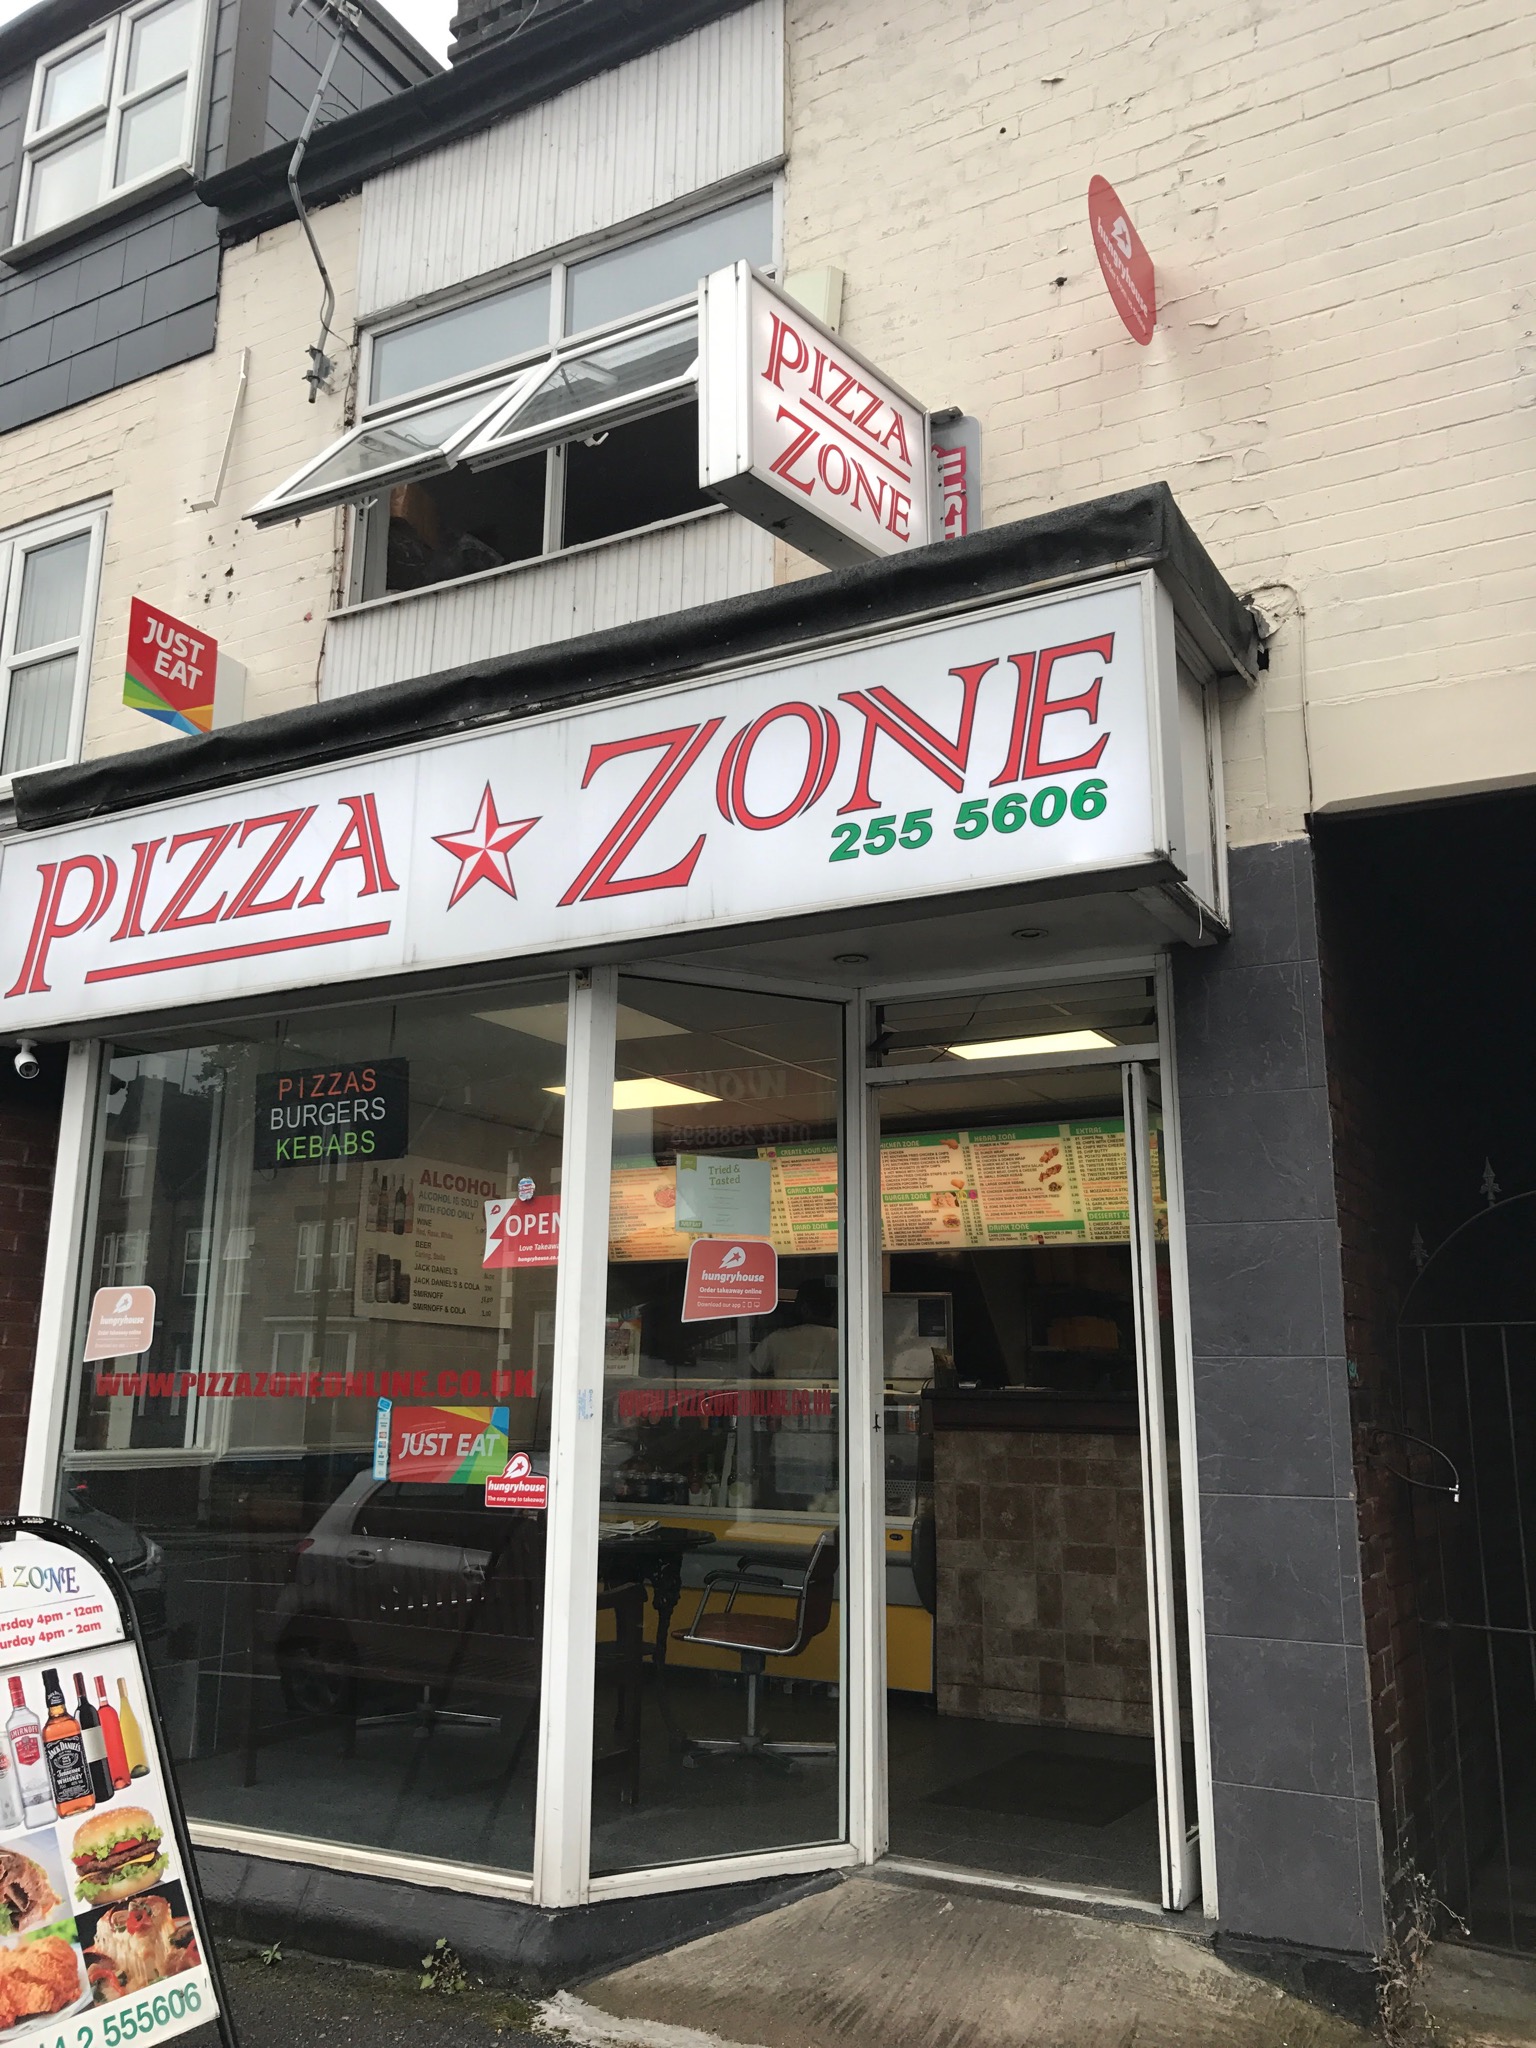 Satılık Pizza Kebab Alkol ve Gece Lisanslı Dükkan